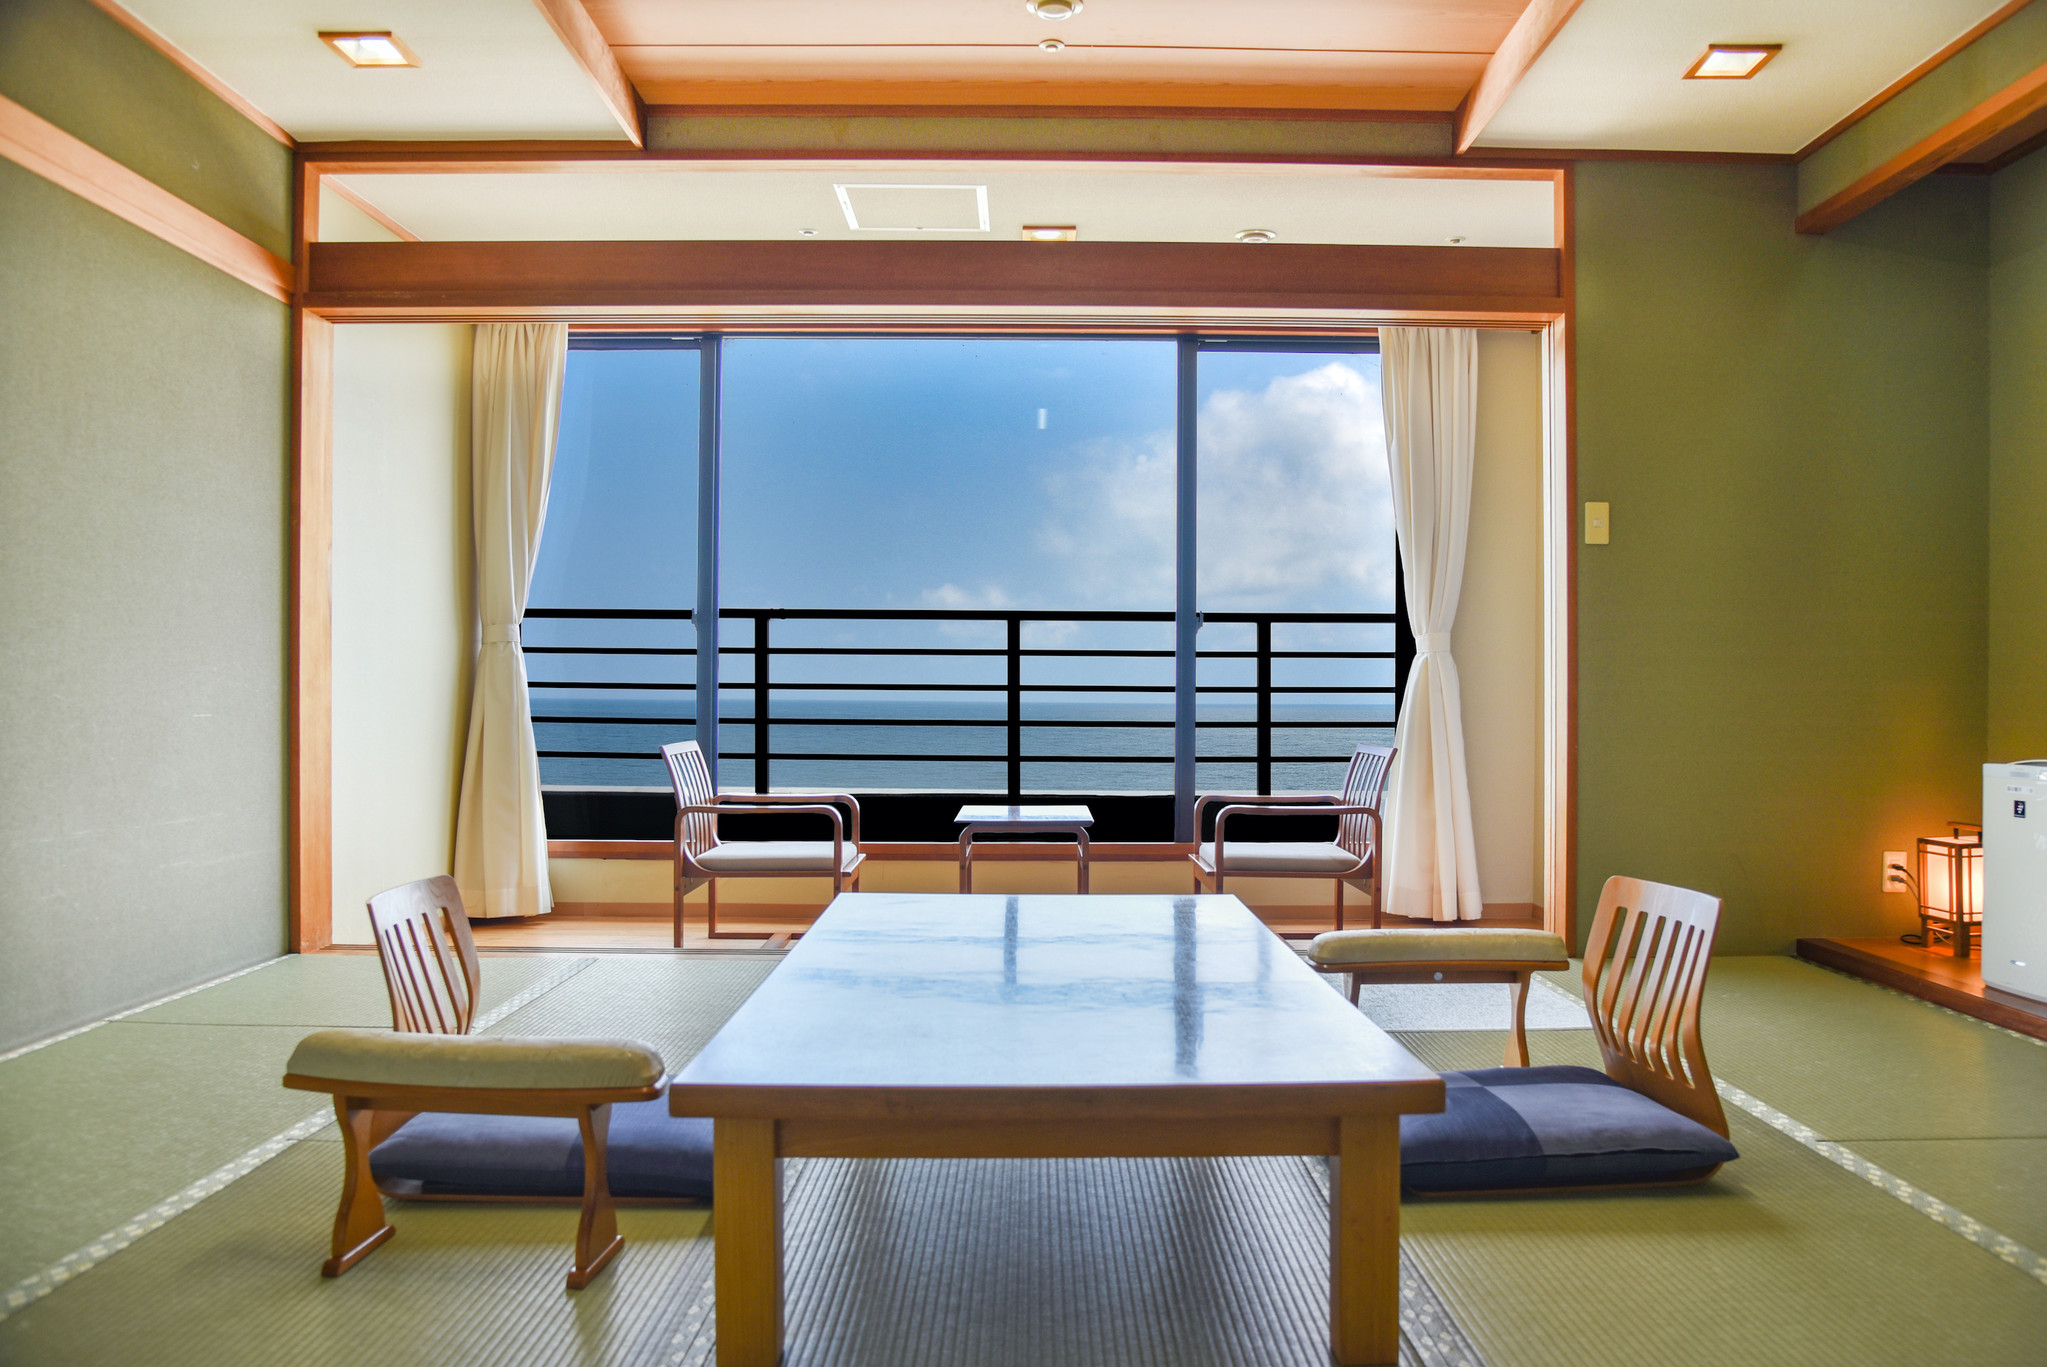 三重県の旅館「浜の雅亭一井」の事業を株式会社一井が承継。旅館の再生目指す。